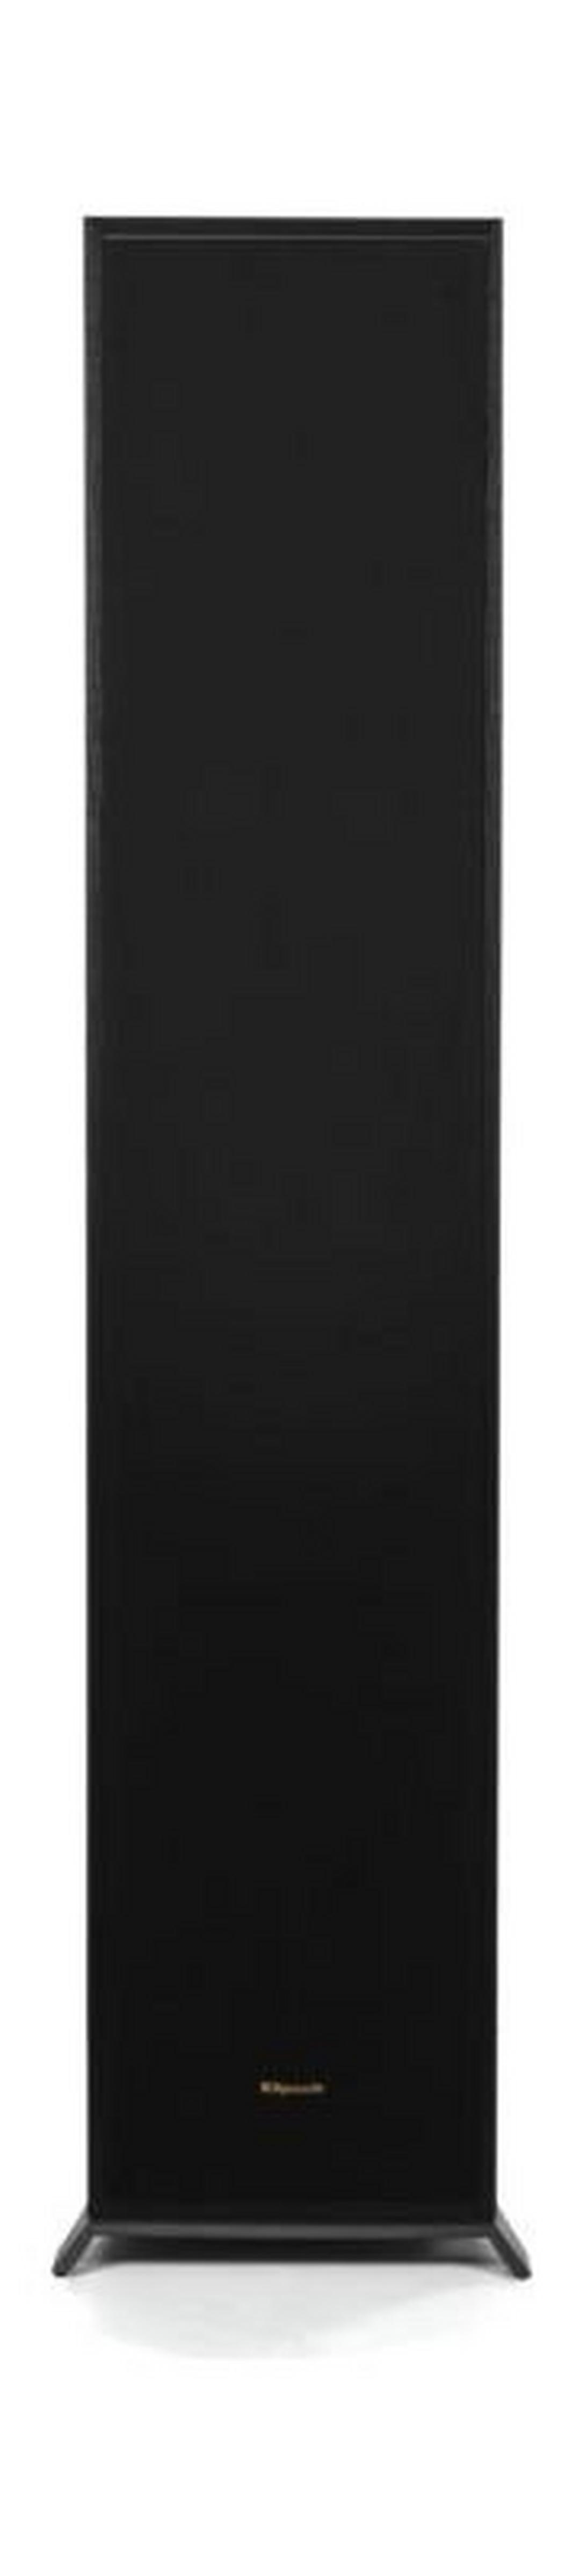 Klipsch R-620F Floorstanding Speaker - Black